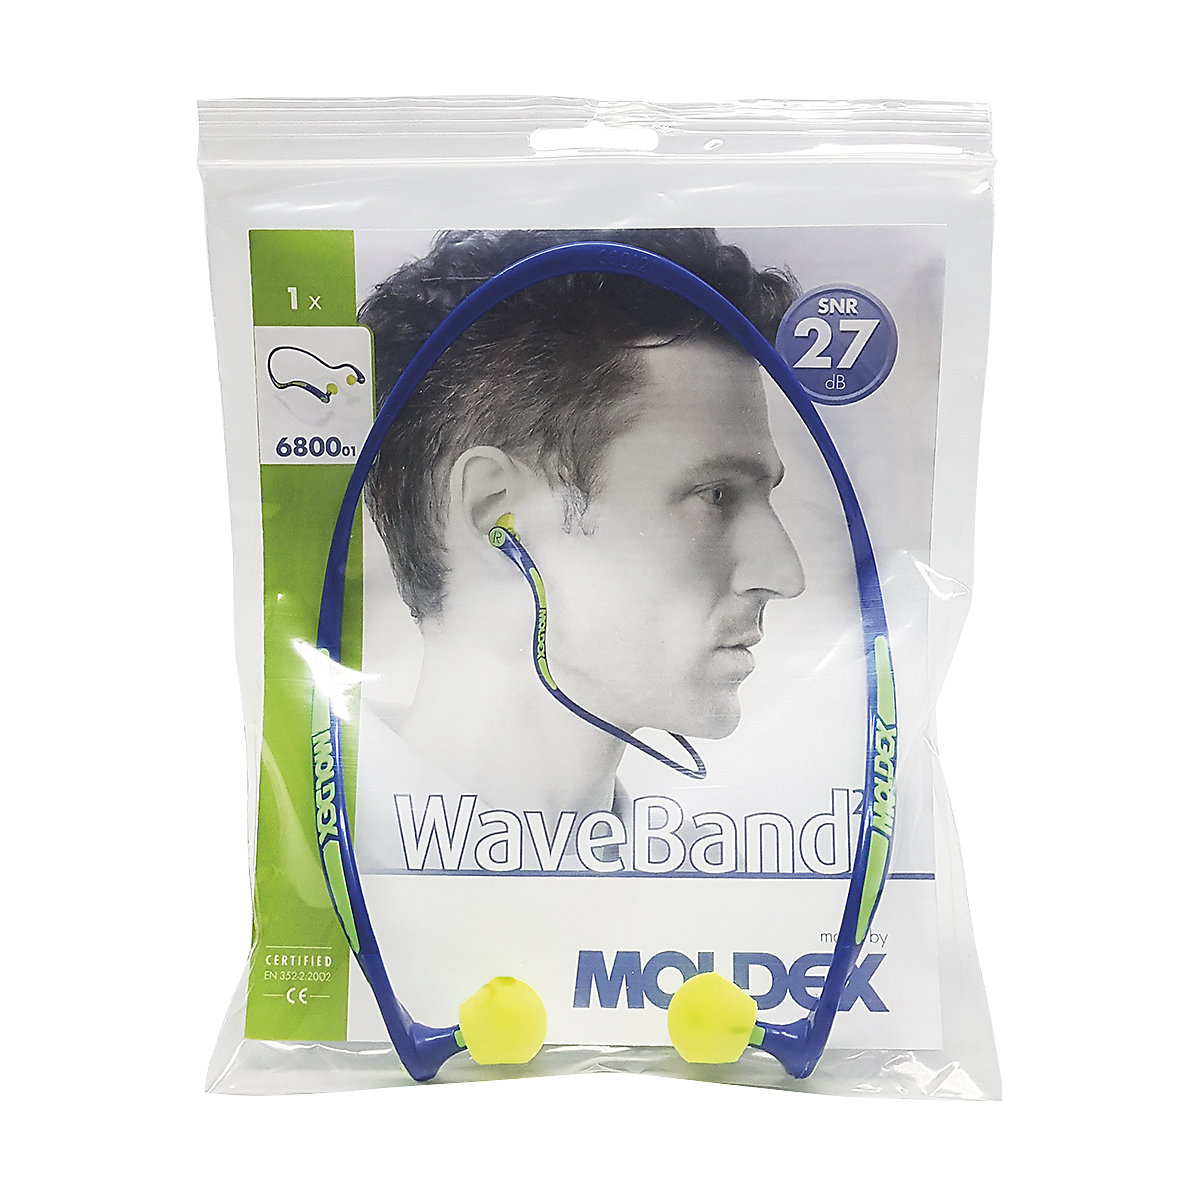 Arco de protección auditiva WaveBand® 2K – MOLDEX (Imagen del producto 2)-1